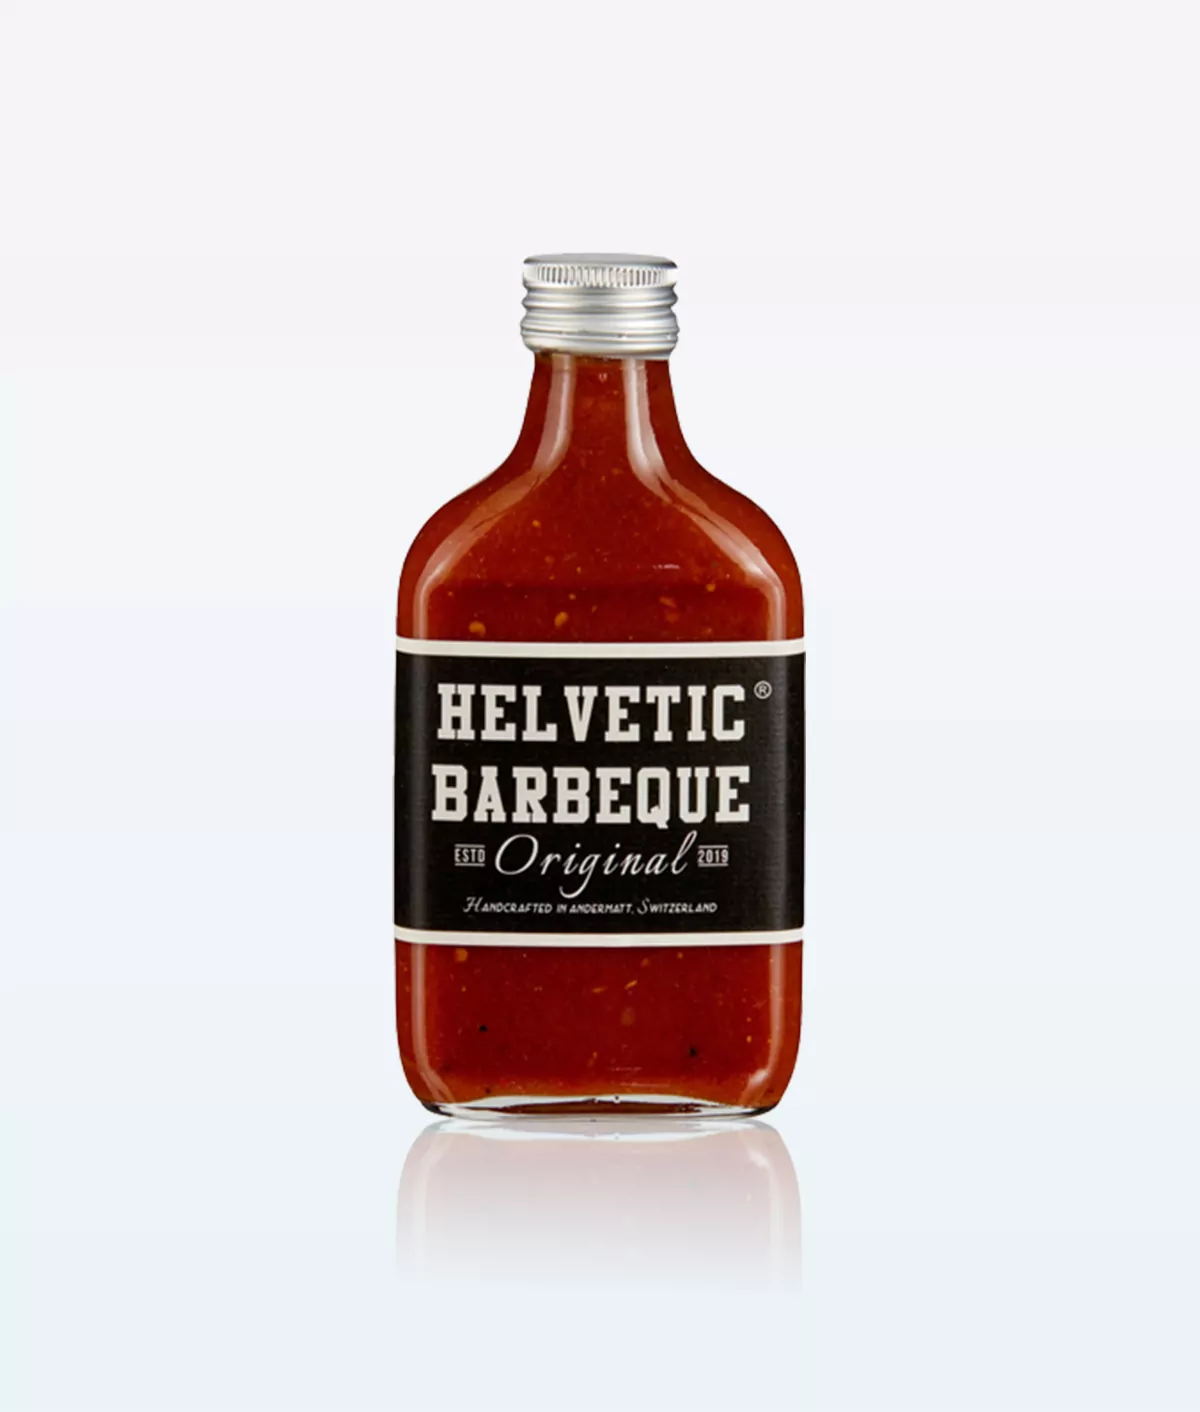 Helvetic BBQ Original Sauce